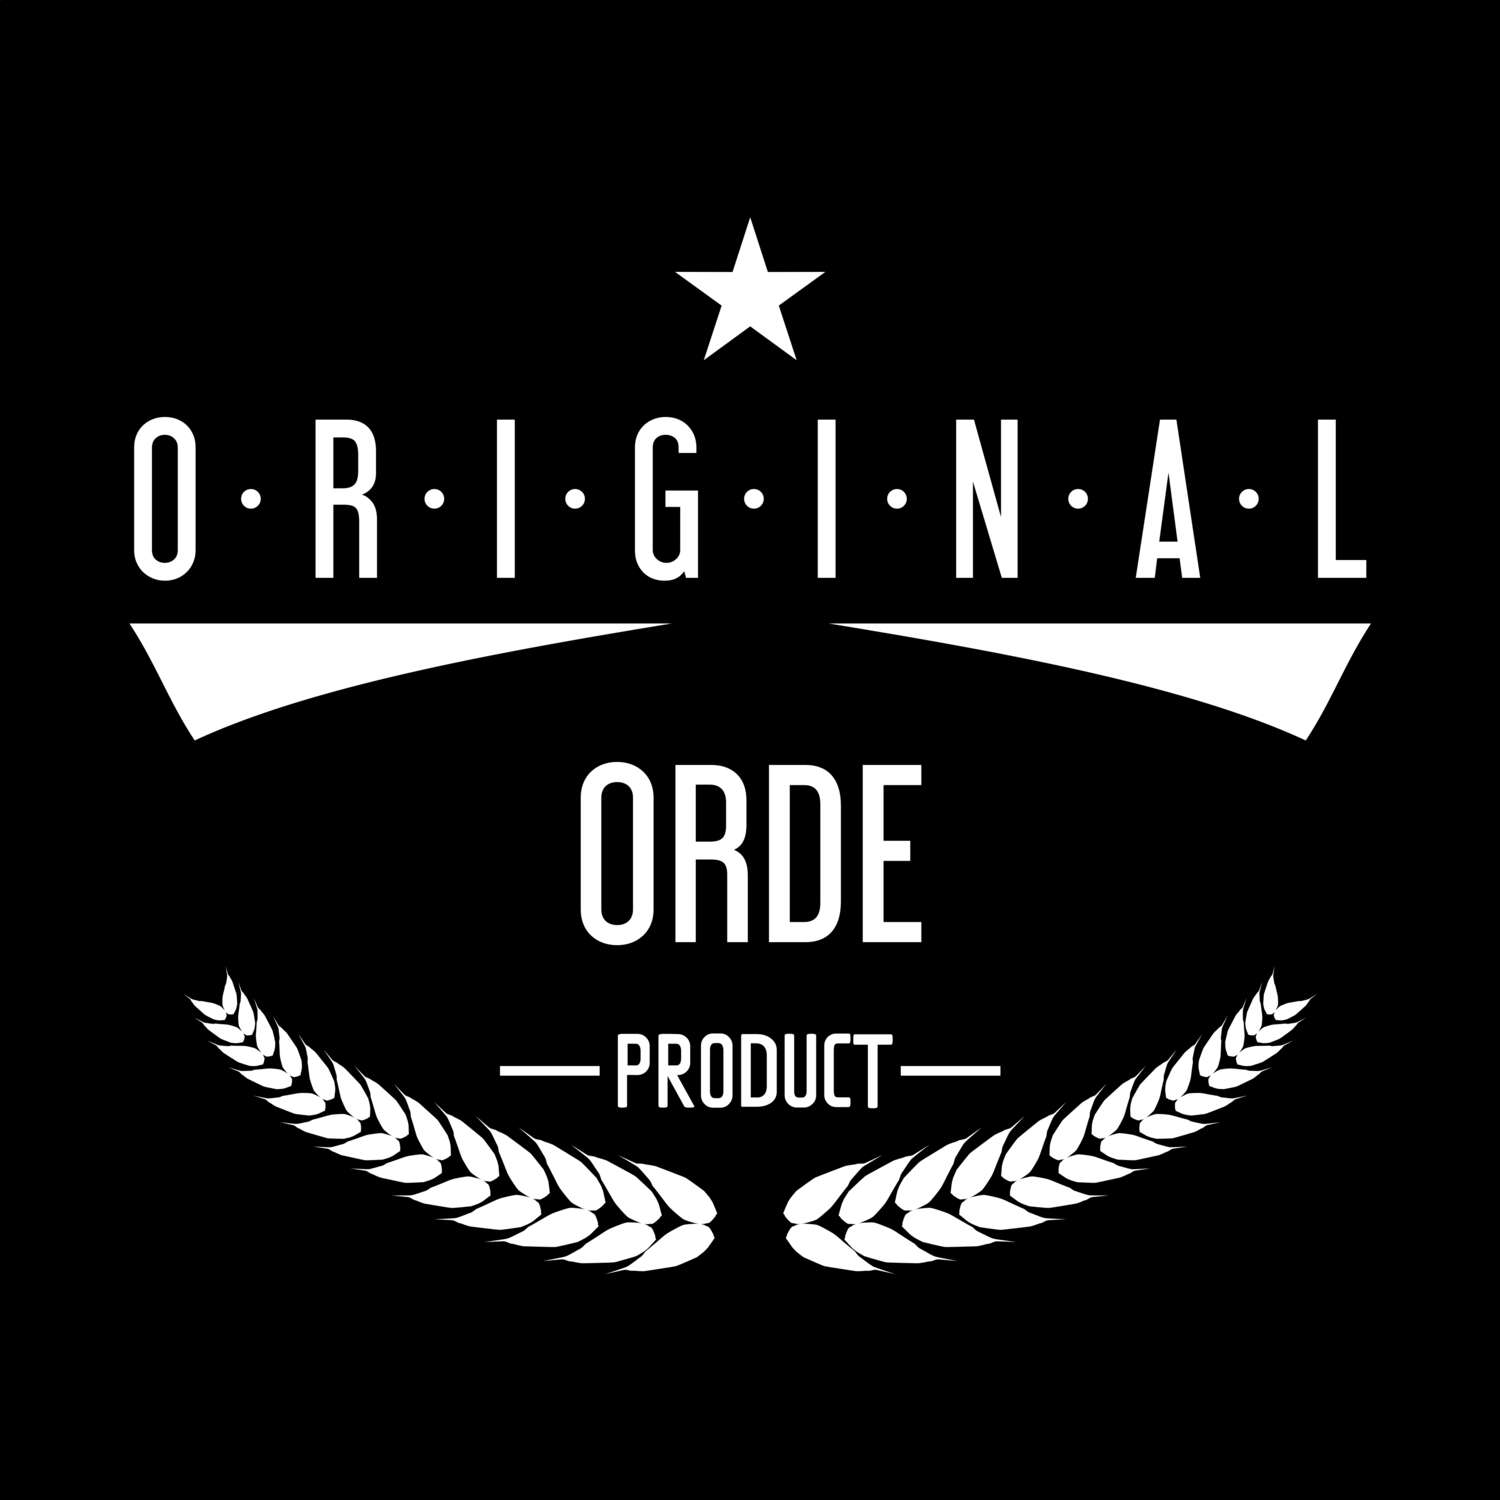 Orde T-Shirt »Original Product«